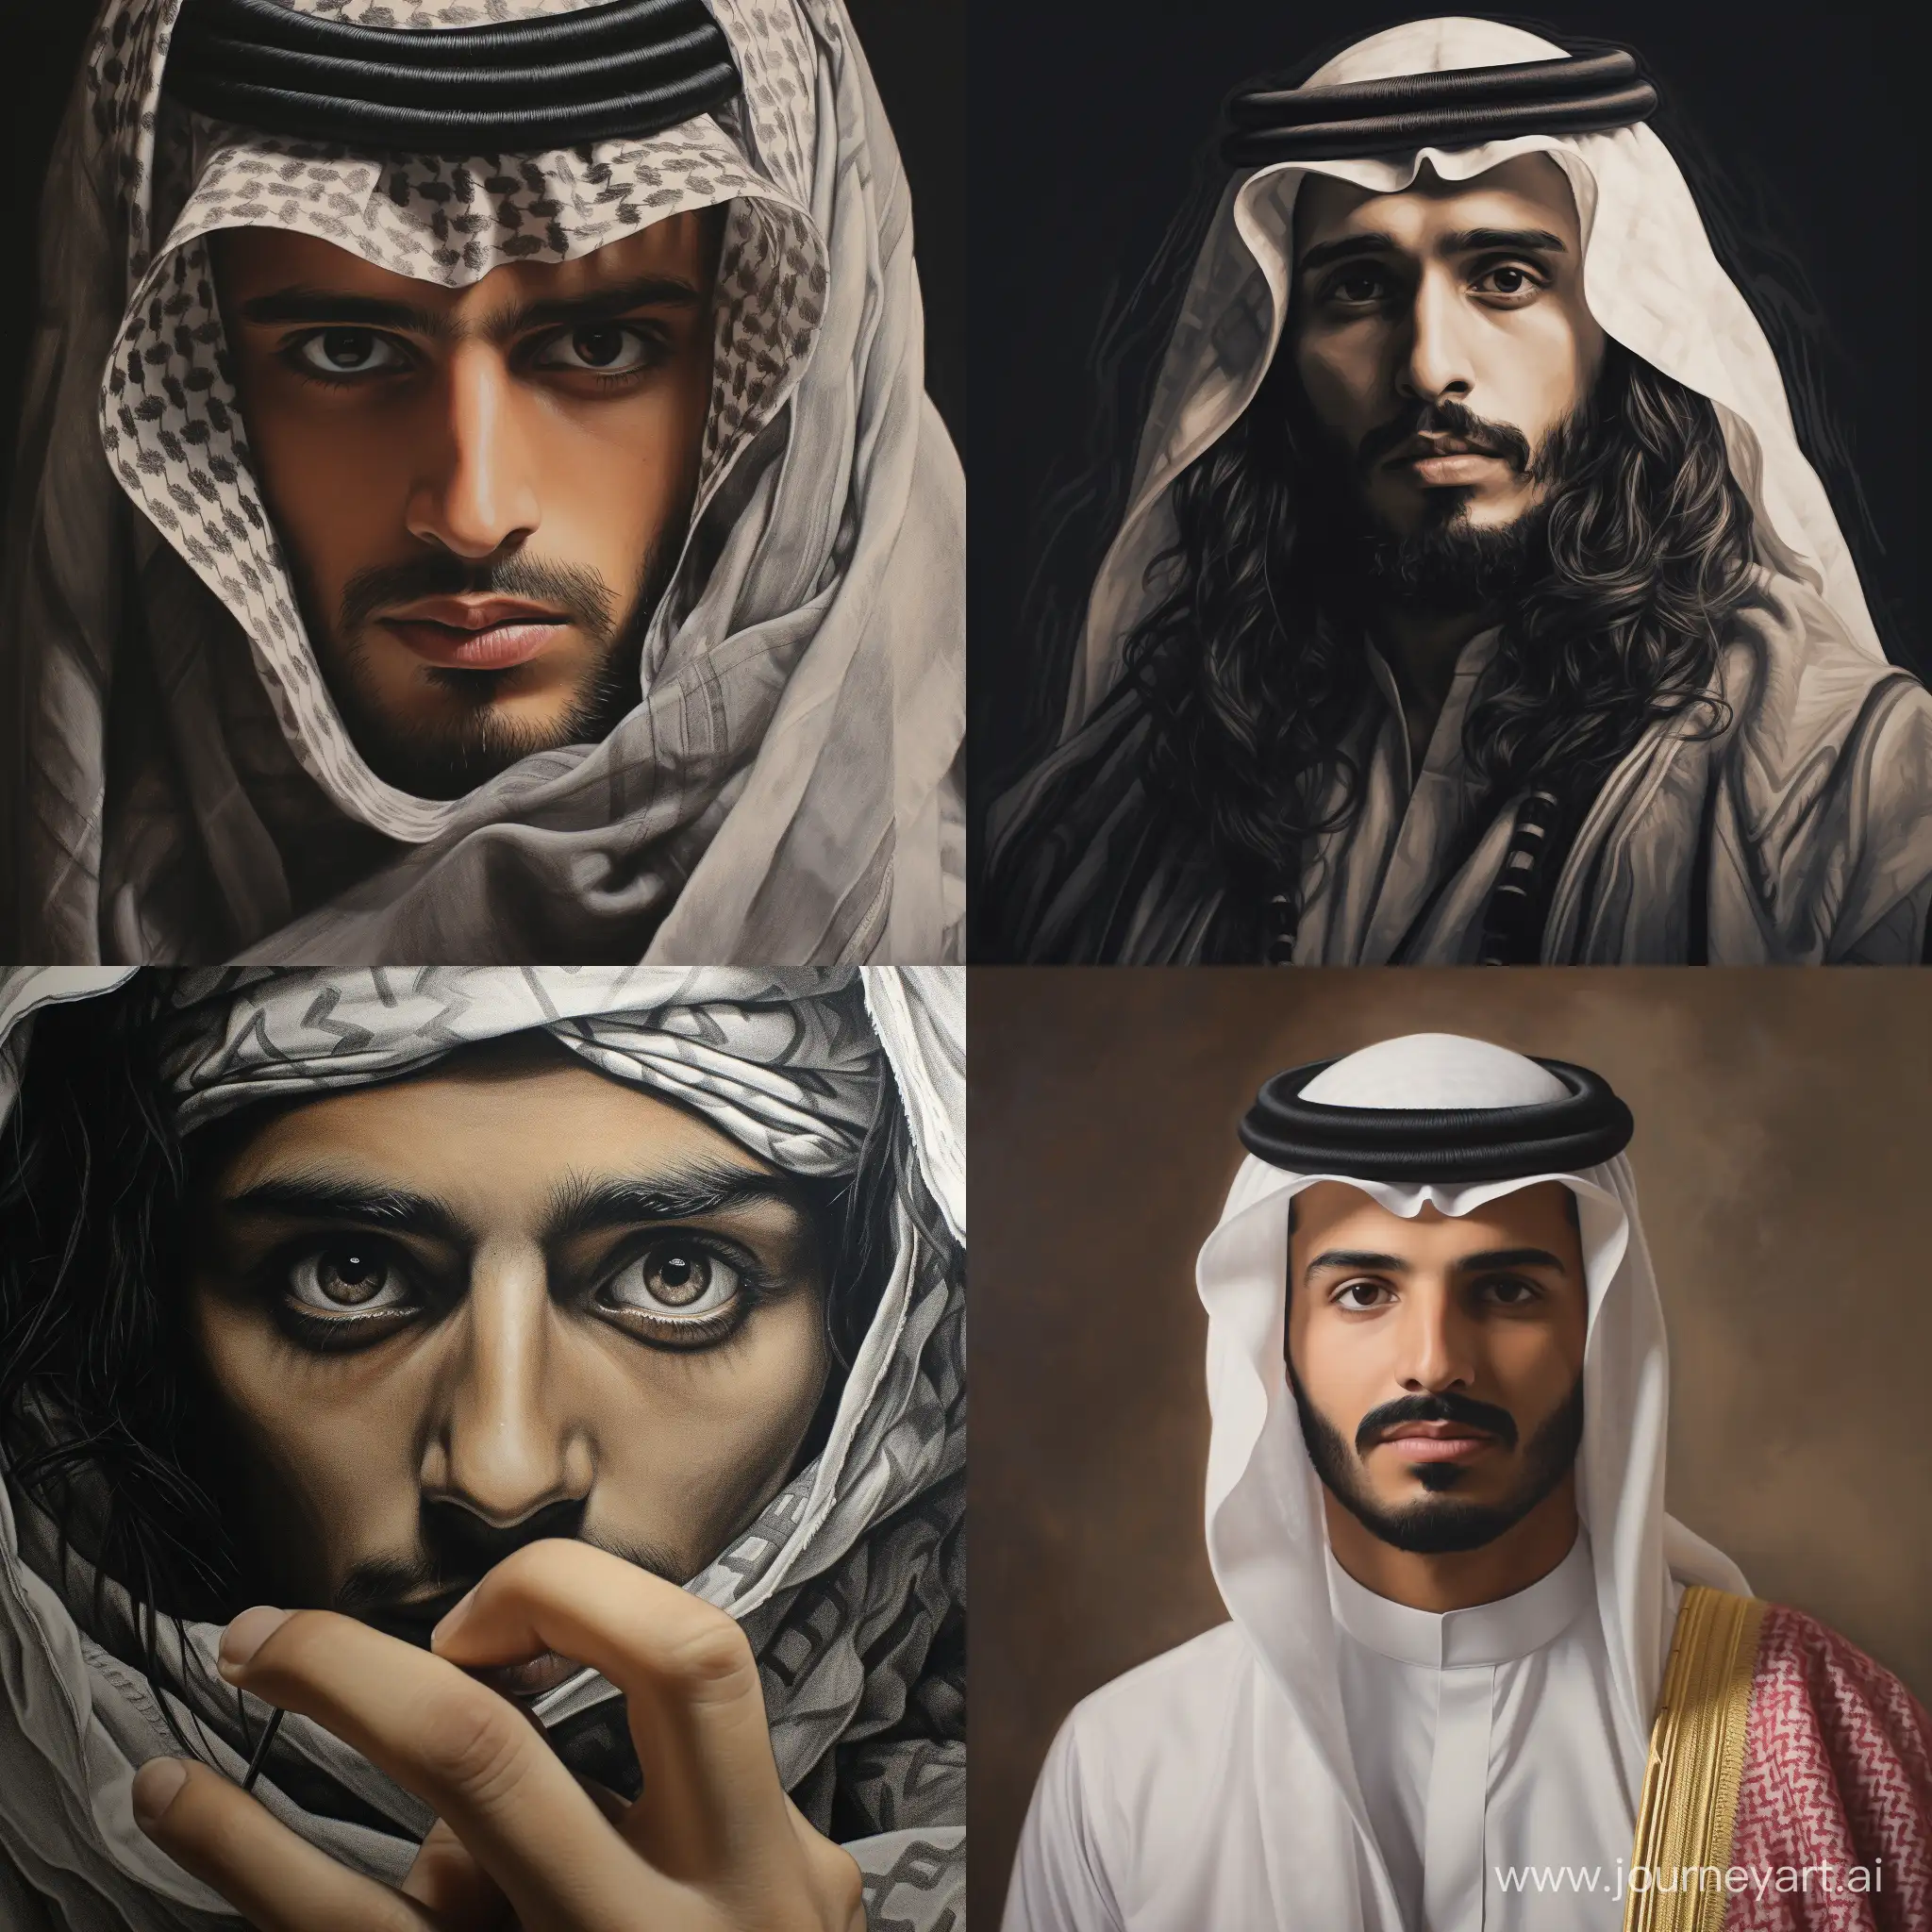 اريد ان ترسم لي صورة واقعية للفنان السعودي محمد عبده